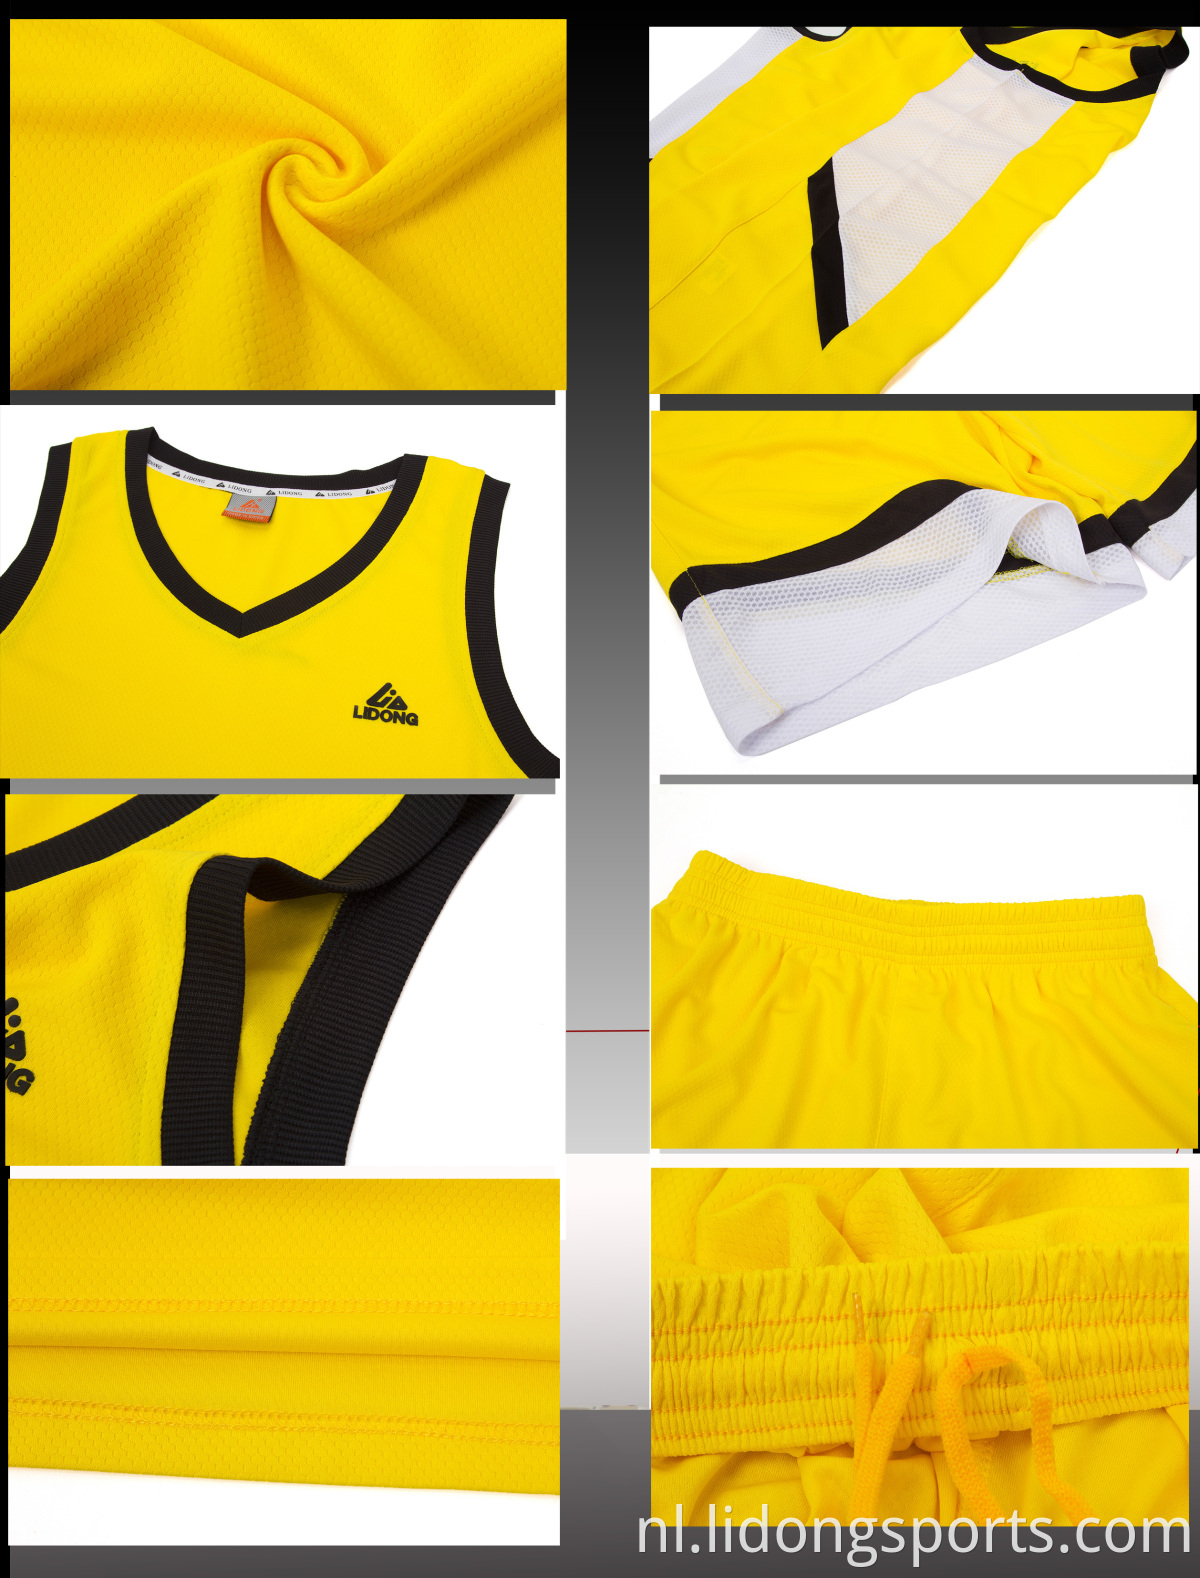 Pas basketbaltruien aan jeugd mode beste basketball jersey uniform ontwerp